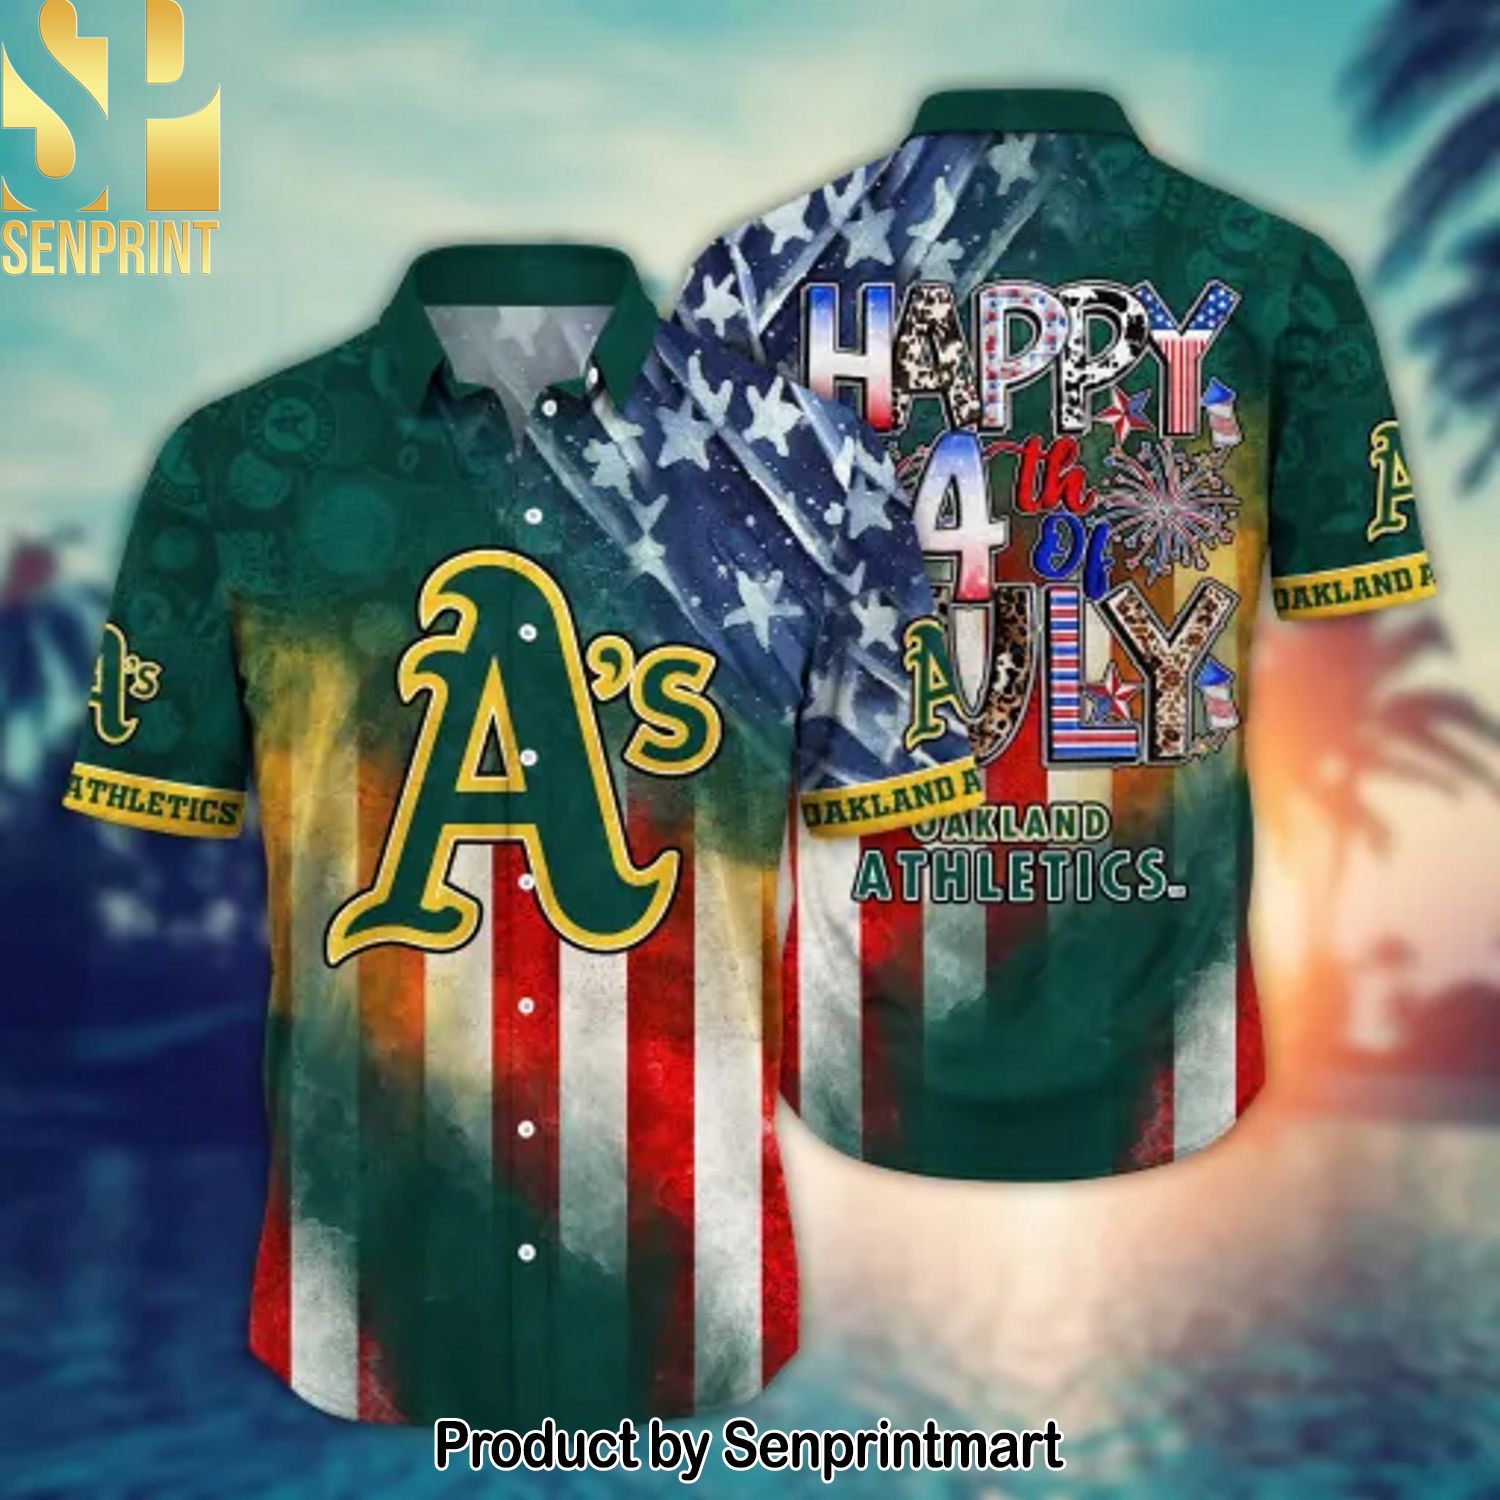 Oakland Athletics MLB Full Printing Classic Hawaiian Shirt and Shorts